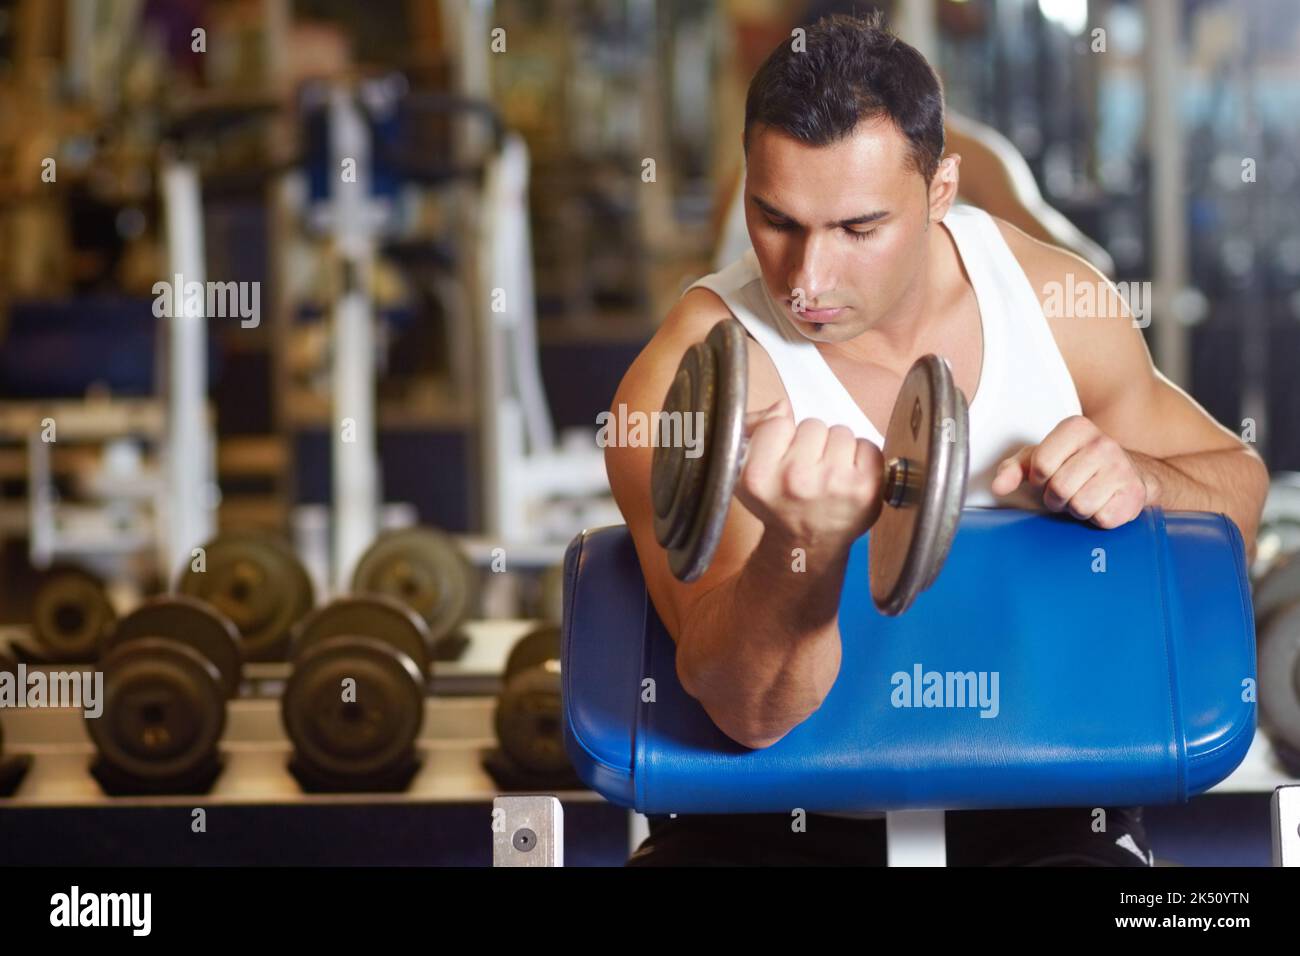 Modellare i suoi bicipiti. Un giovane uomo muscolare che si allenava in palestra. Foto Stock